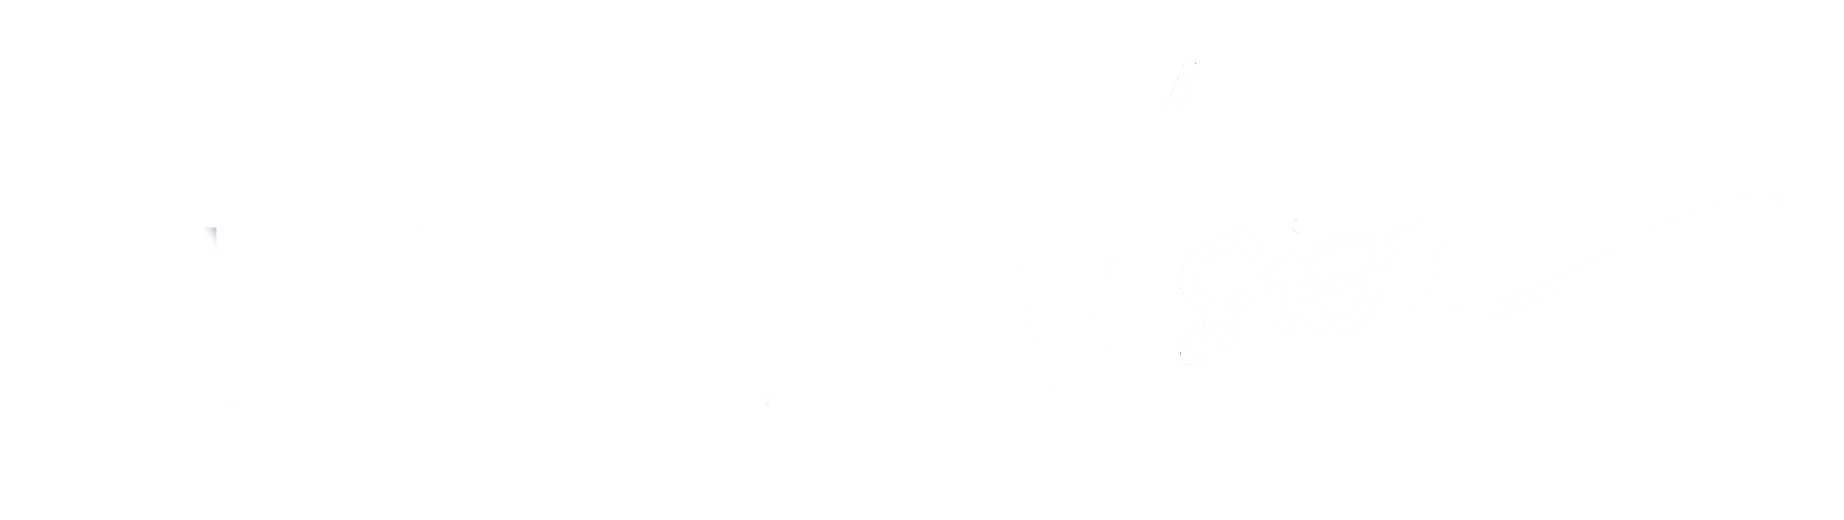 Excel Vision